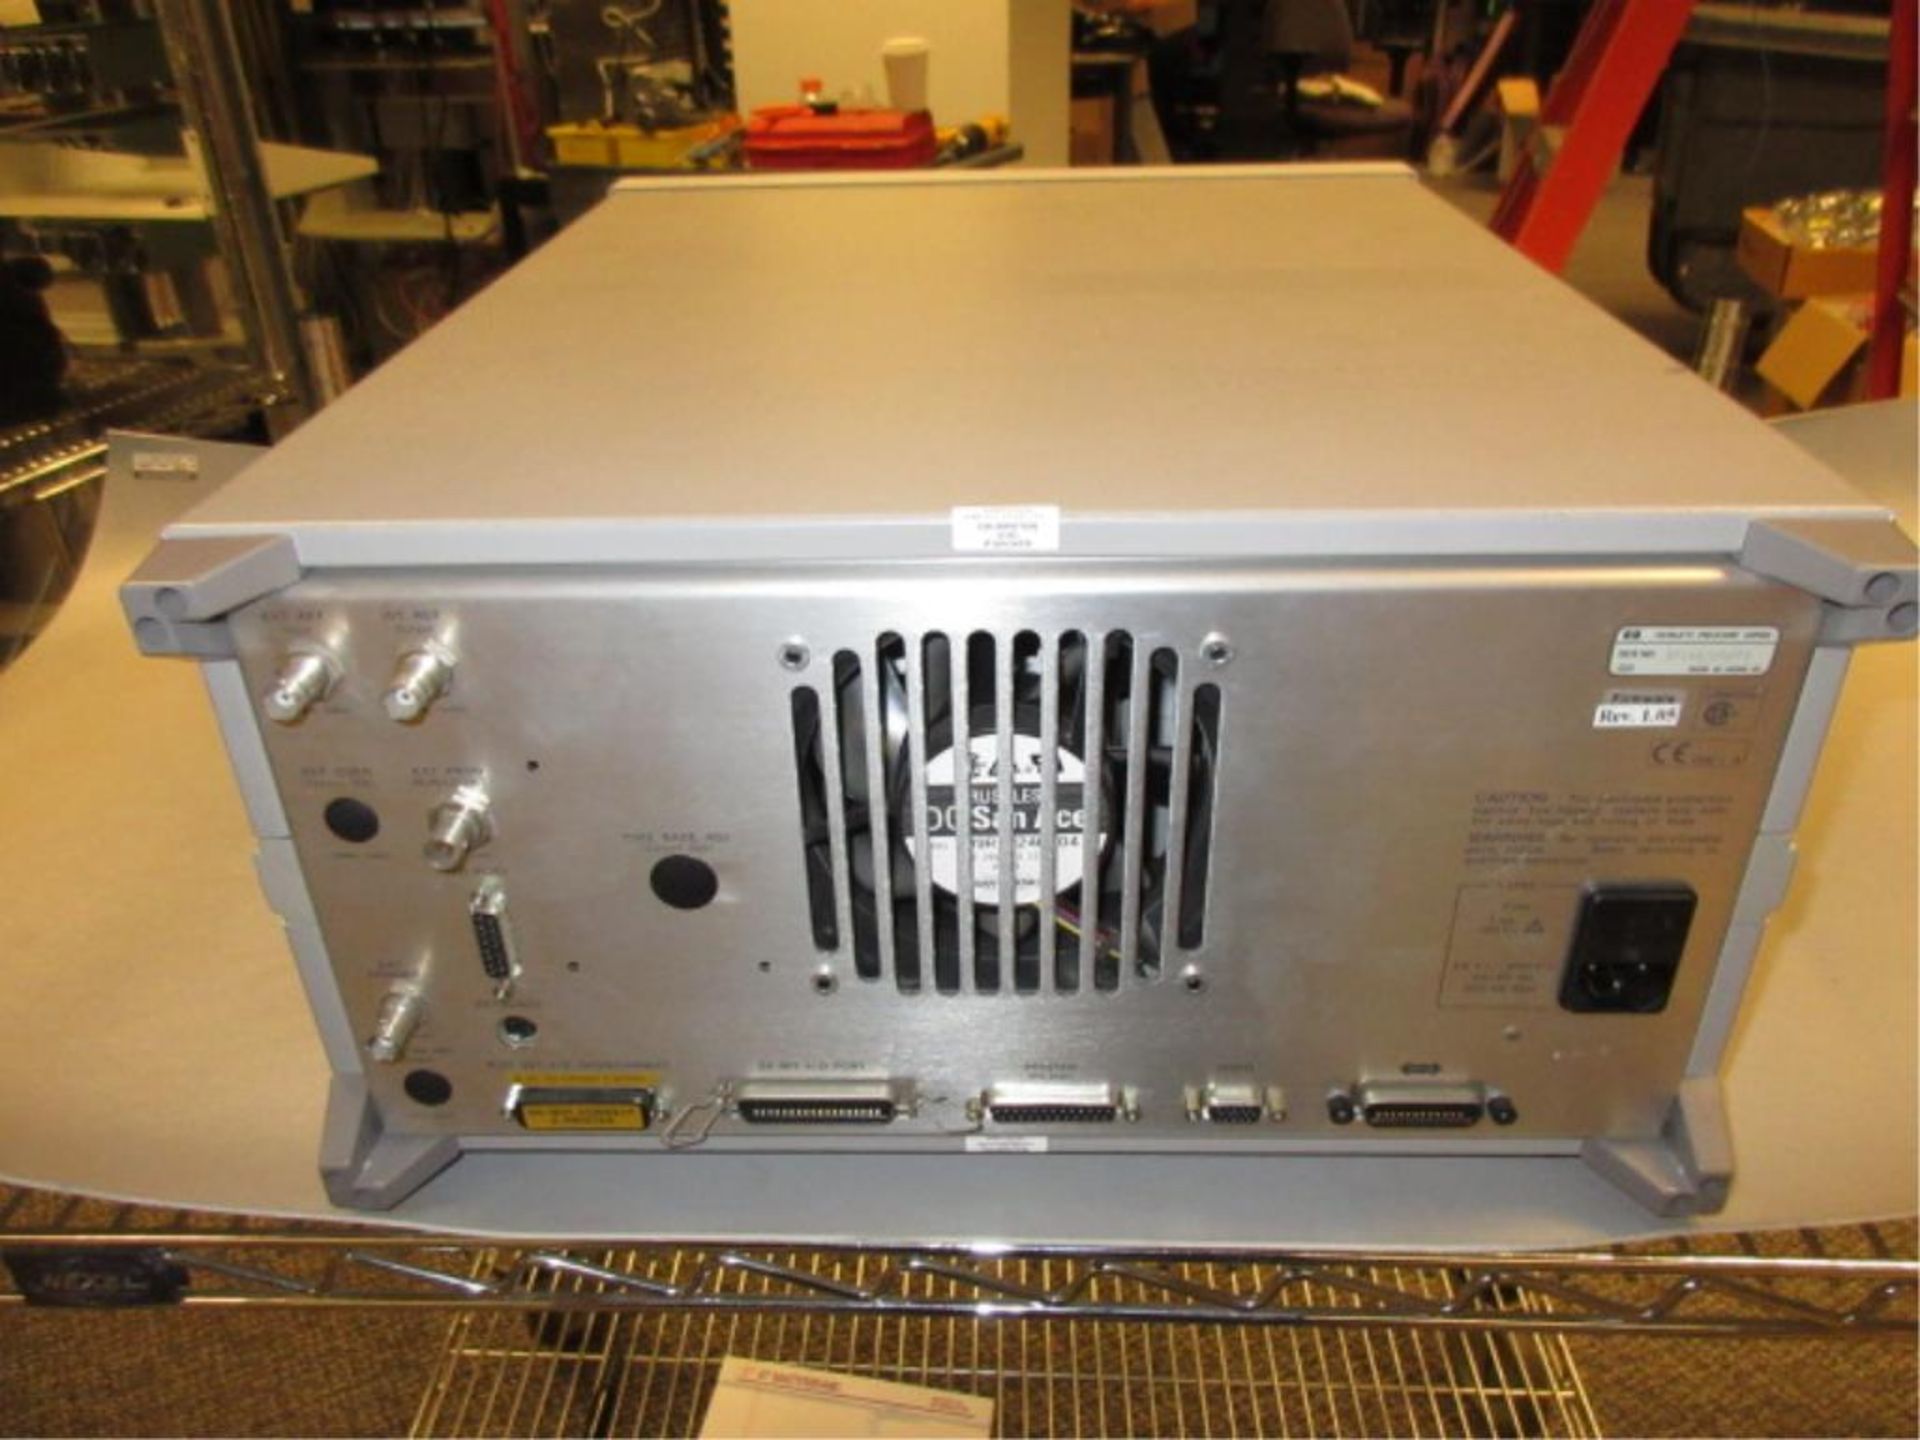 Hewlett Packard 4395A Network/Spectrum/Impedance Analyzer. Network/Spectrum/Impedance Analyzer, - Image 2 of 2